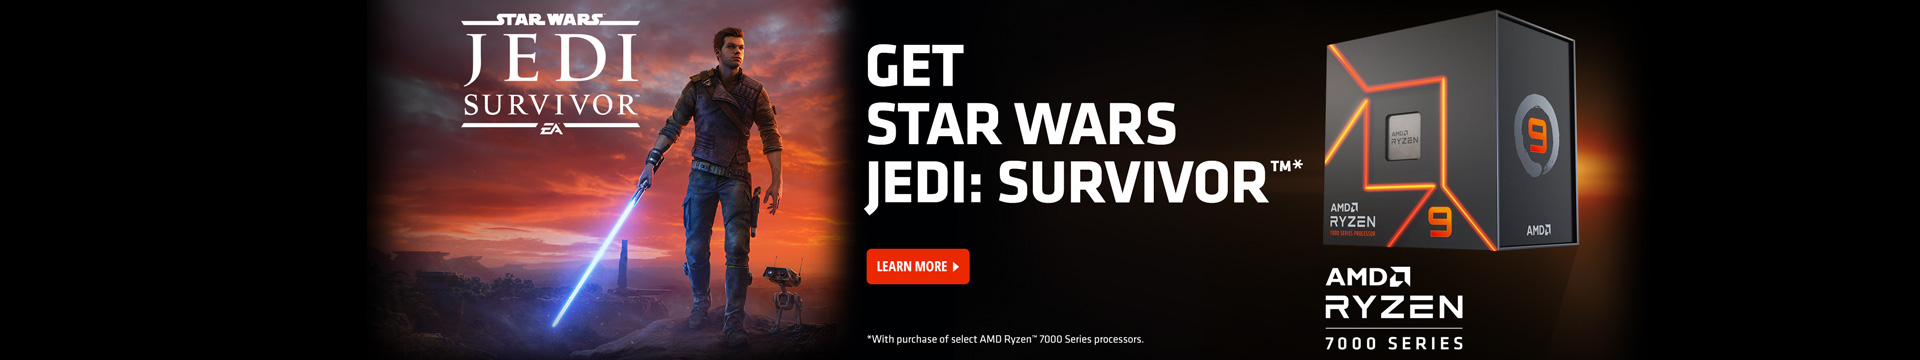 Get Star Wars JEDI: Survivor